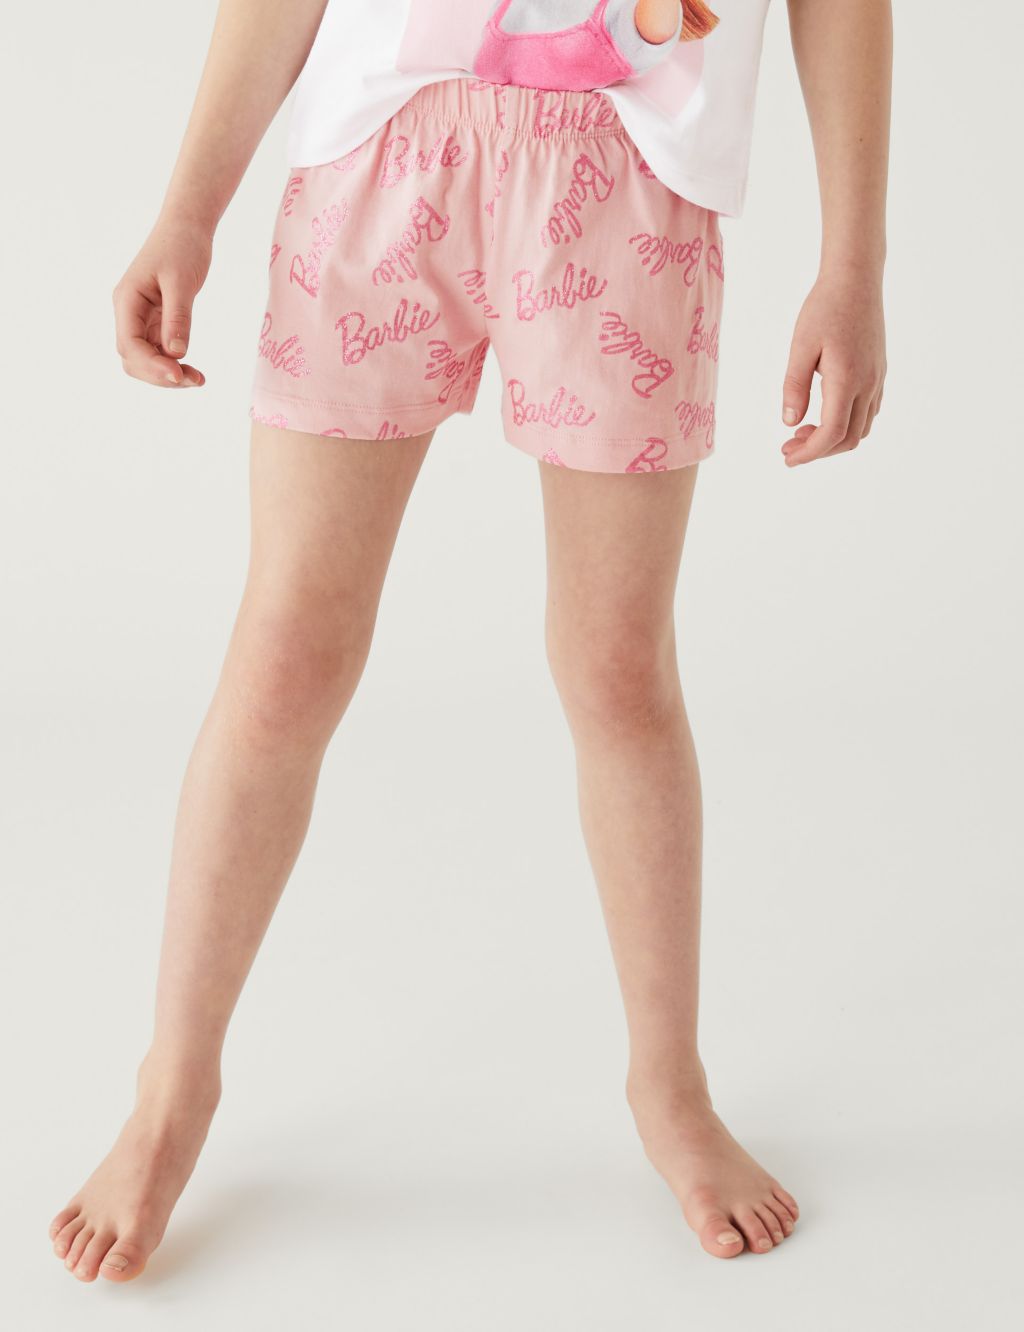 Cotton Barbie™ Pyjamas (5-12 Yrs) image 3